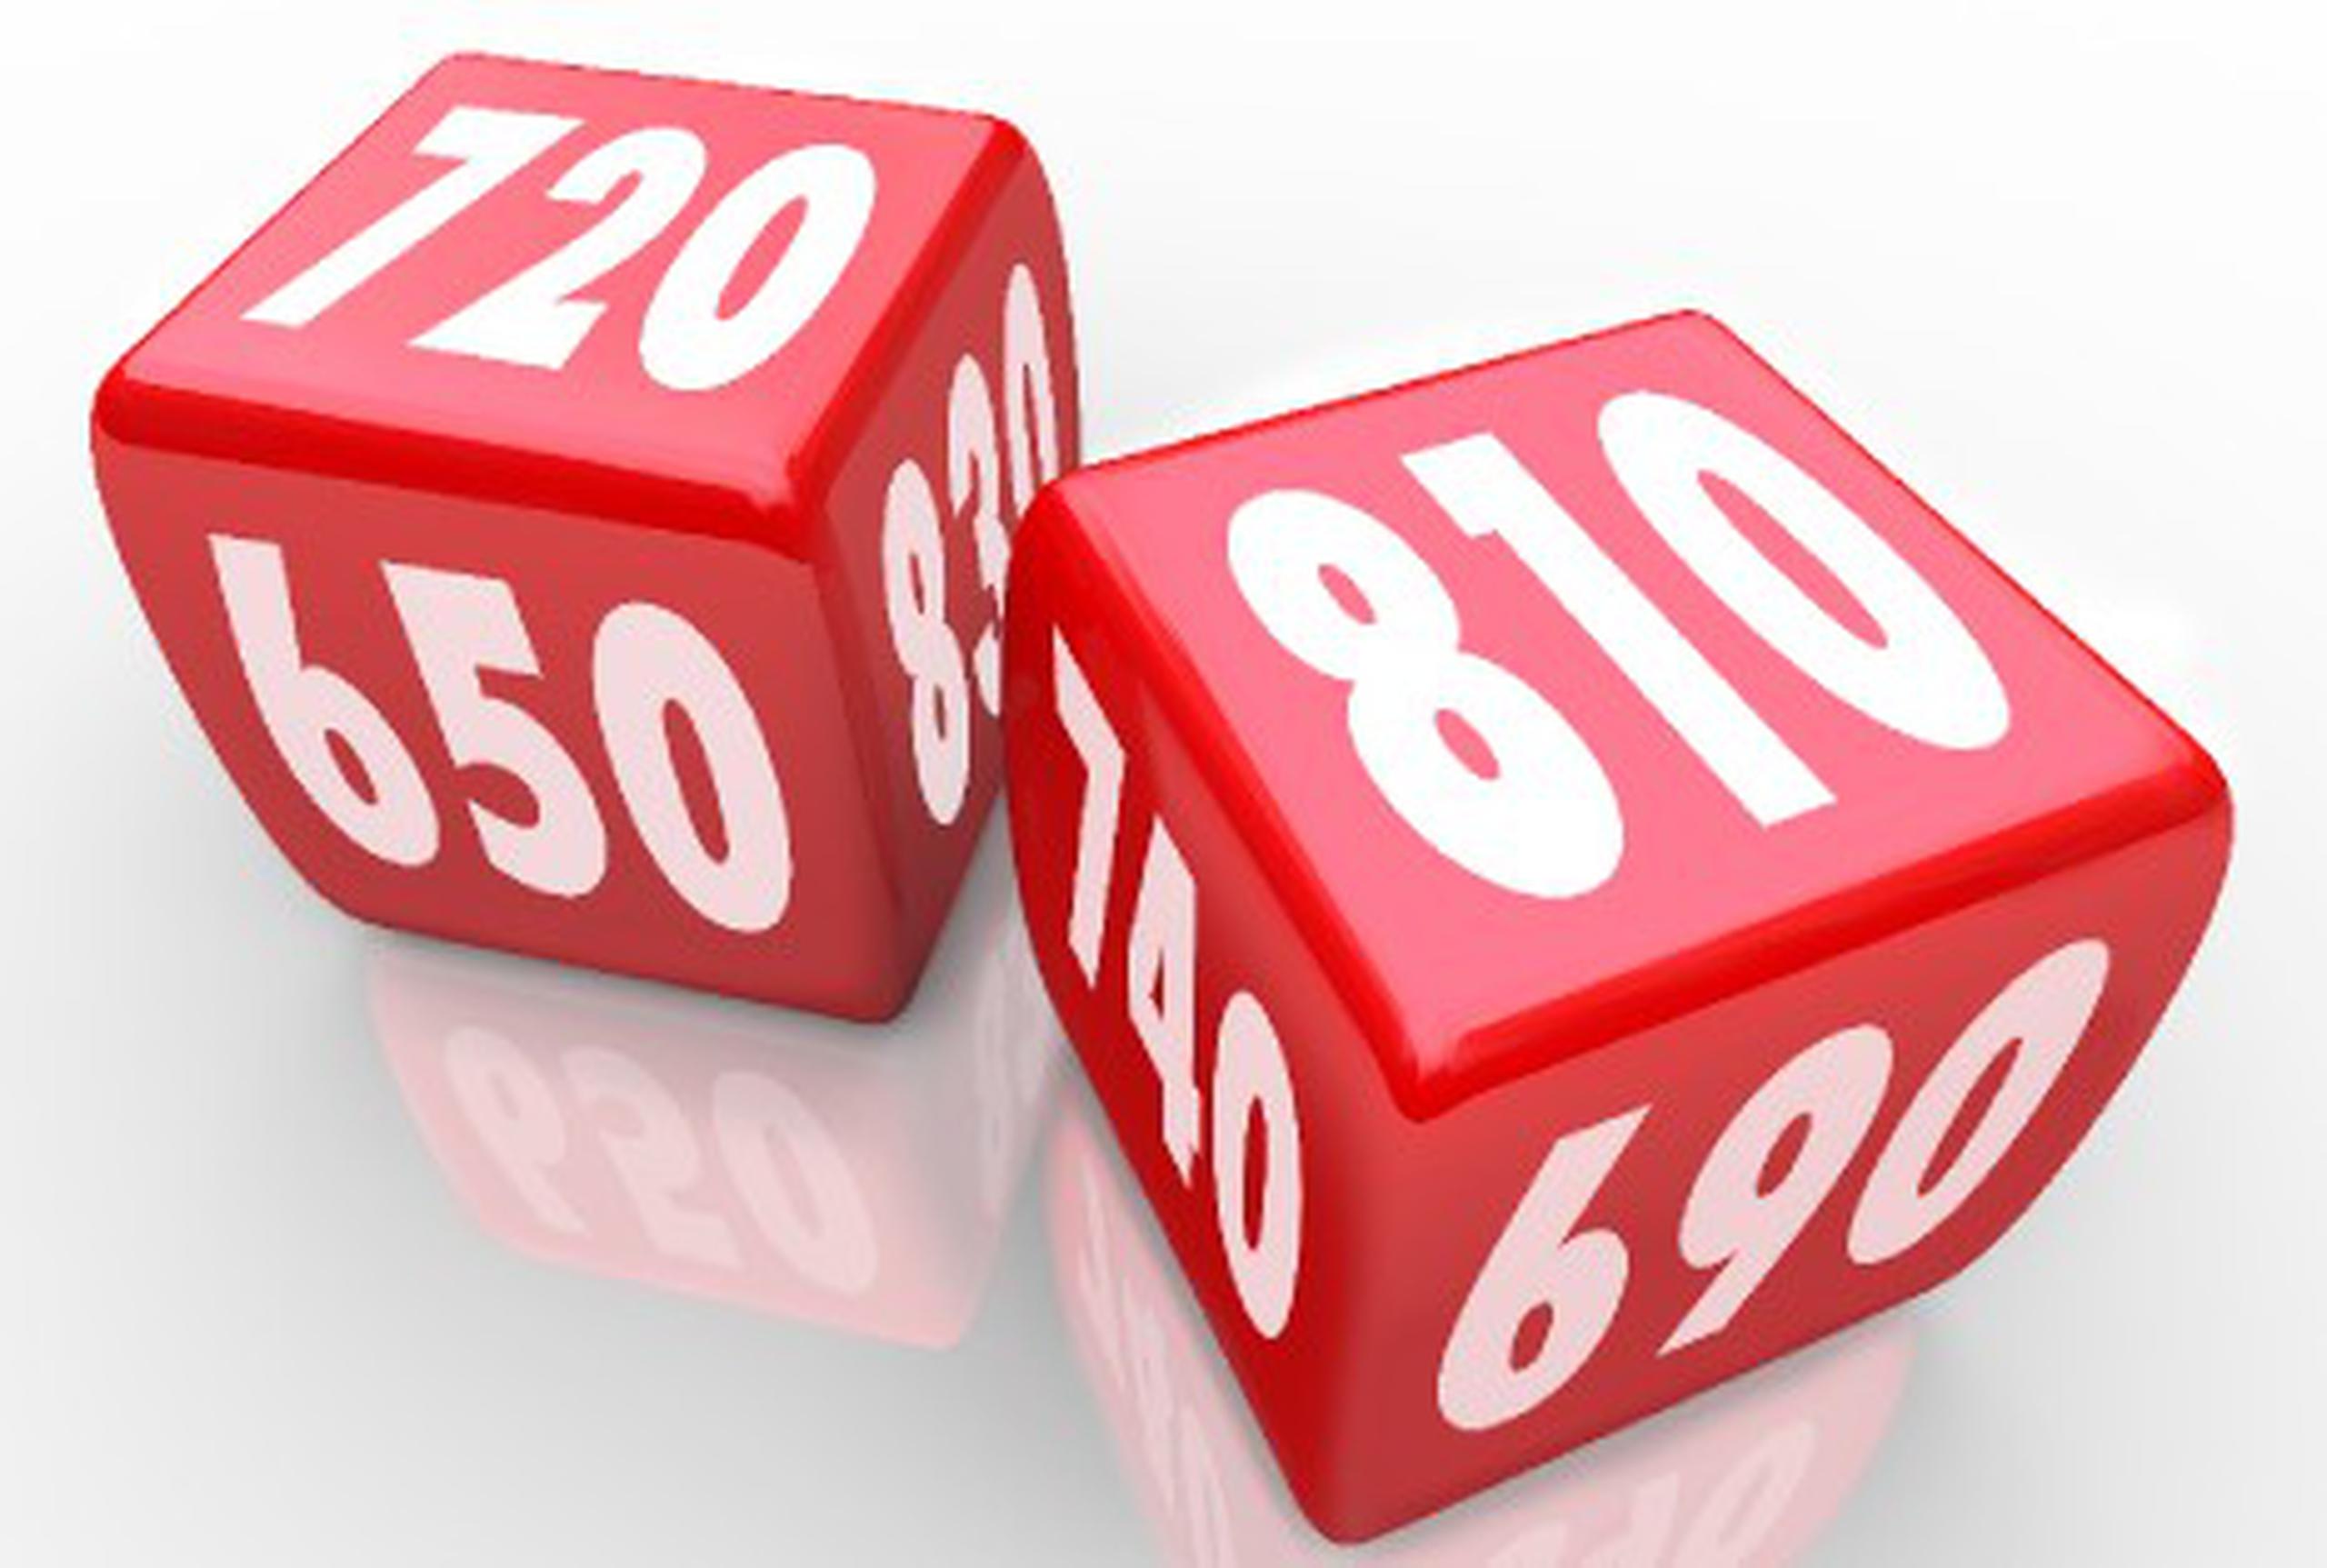 La puntuaciones de crédito van desde 300 hasta 850. Mientras mayor es esa puntuación, mejor y más confiable se considera tu crédito.